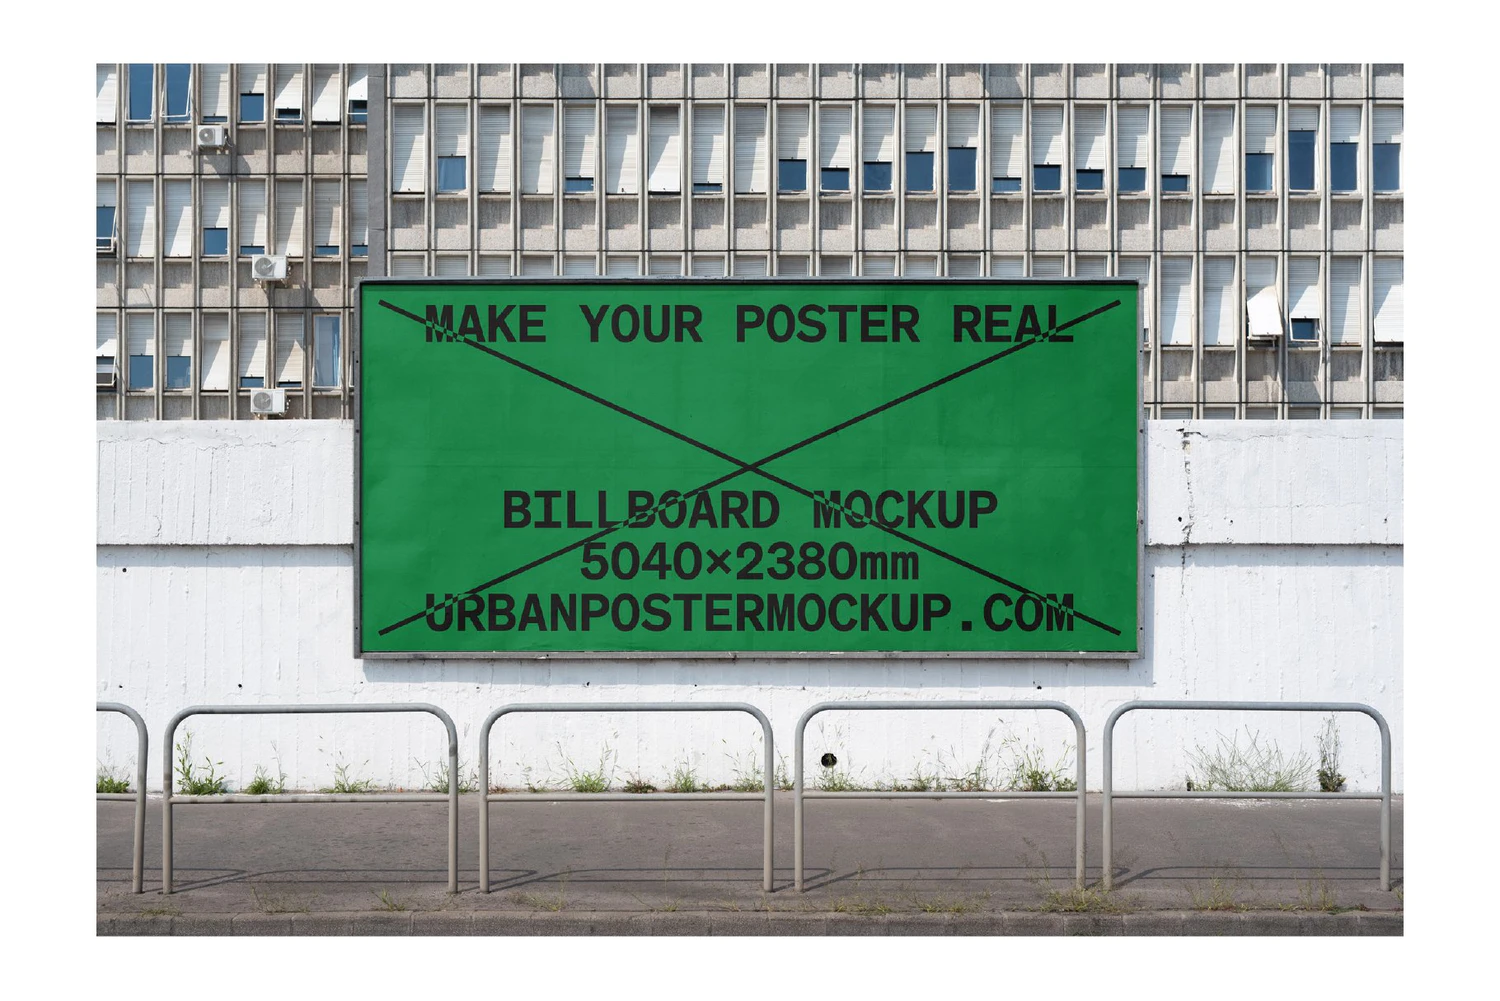 3490 20款户外车站地铁巨幅海报广告设计贴图ps样机素材场景展示效果 Billboard Mockup VOL.3